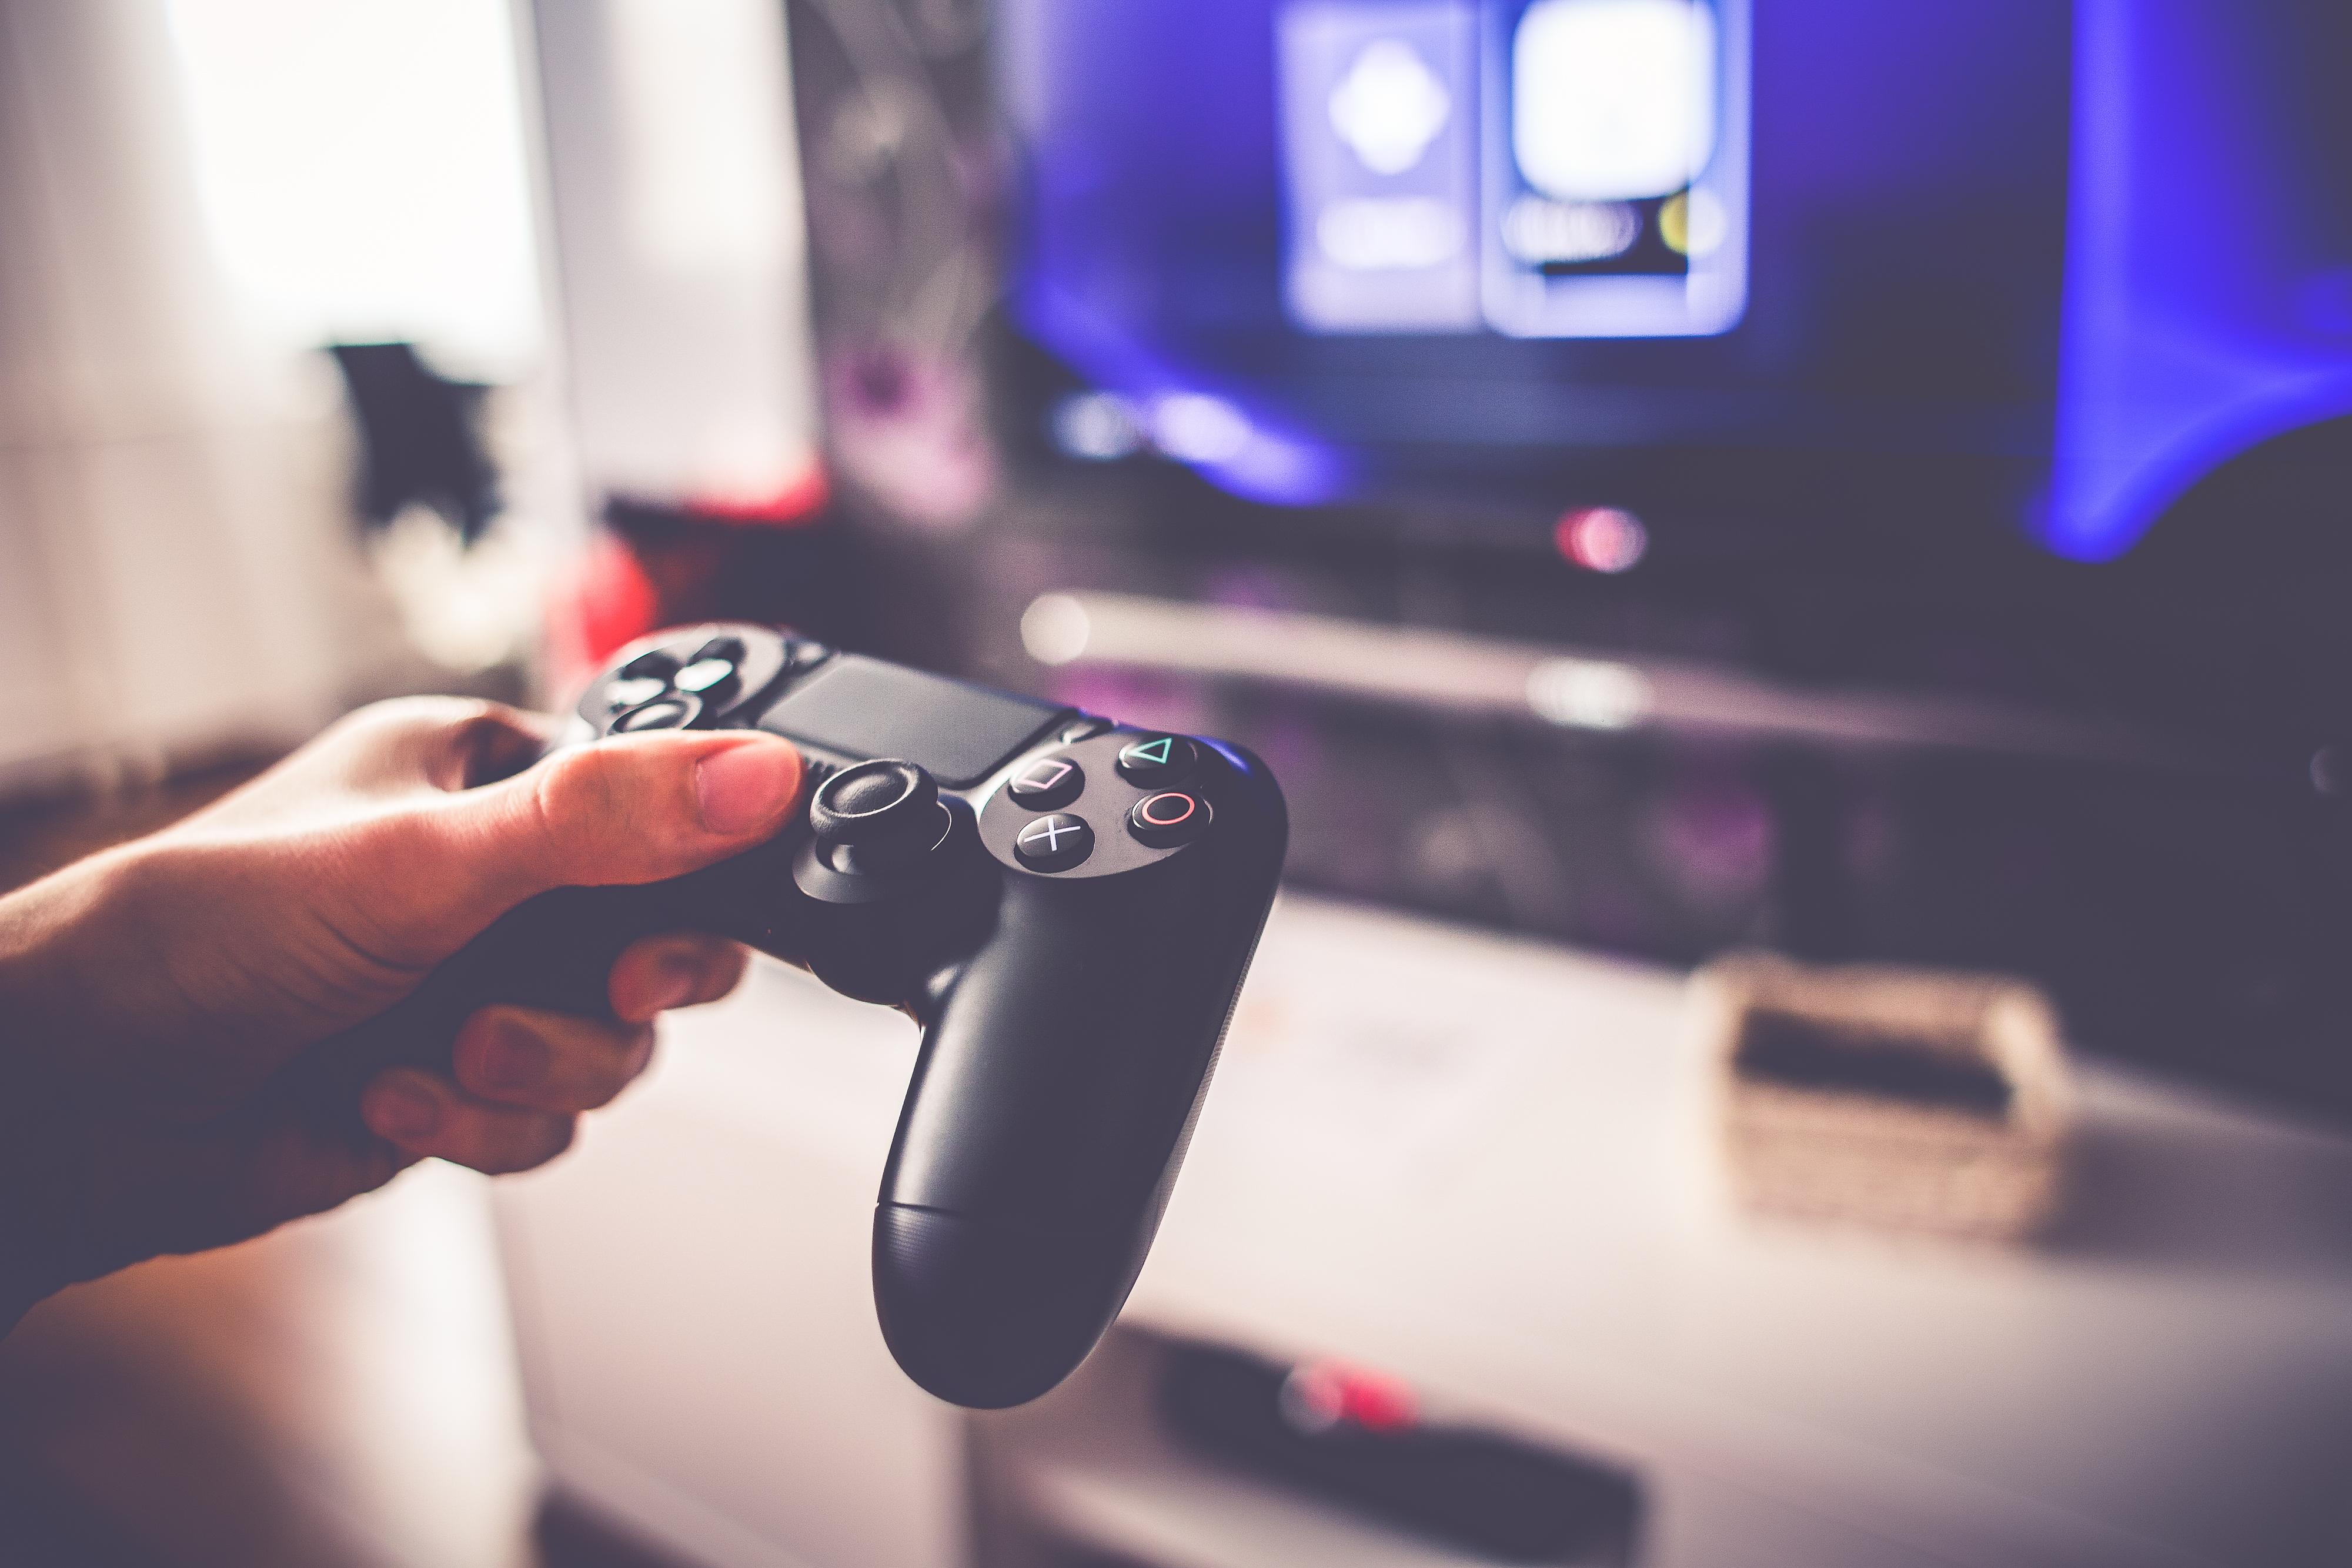  Estudio indica que 9 horas de videojuegos a la semana son perjudiciales